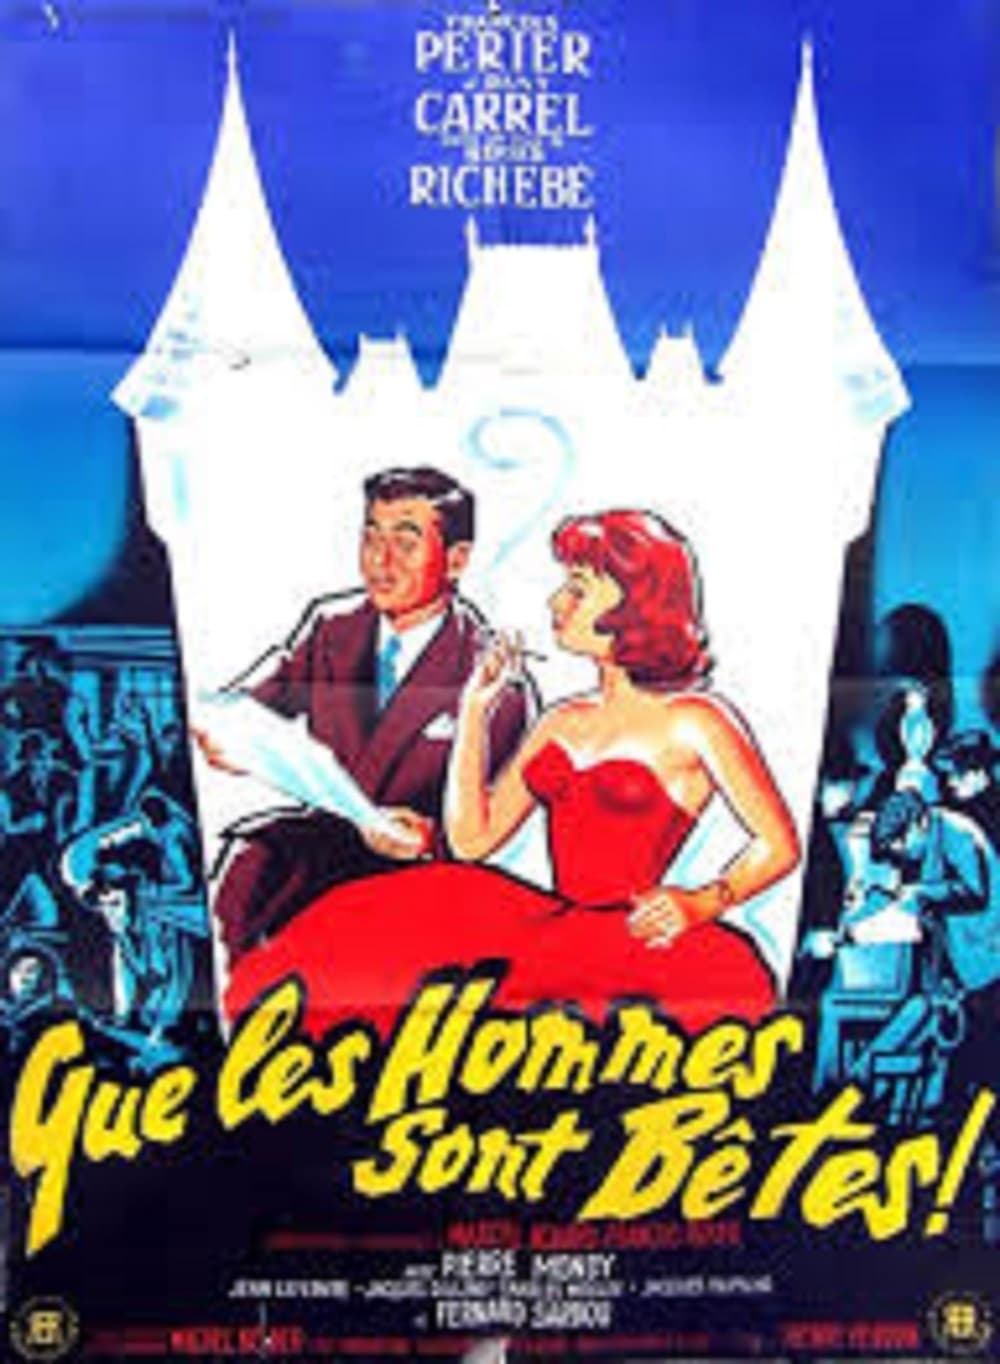 Que les hommes sont bêtes (1957)